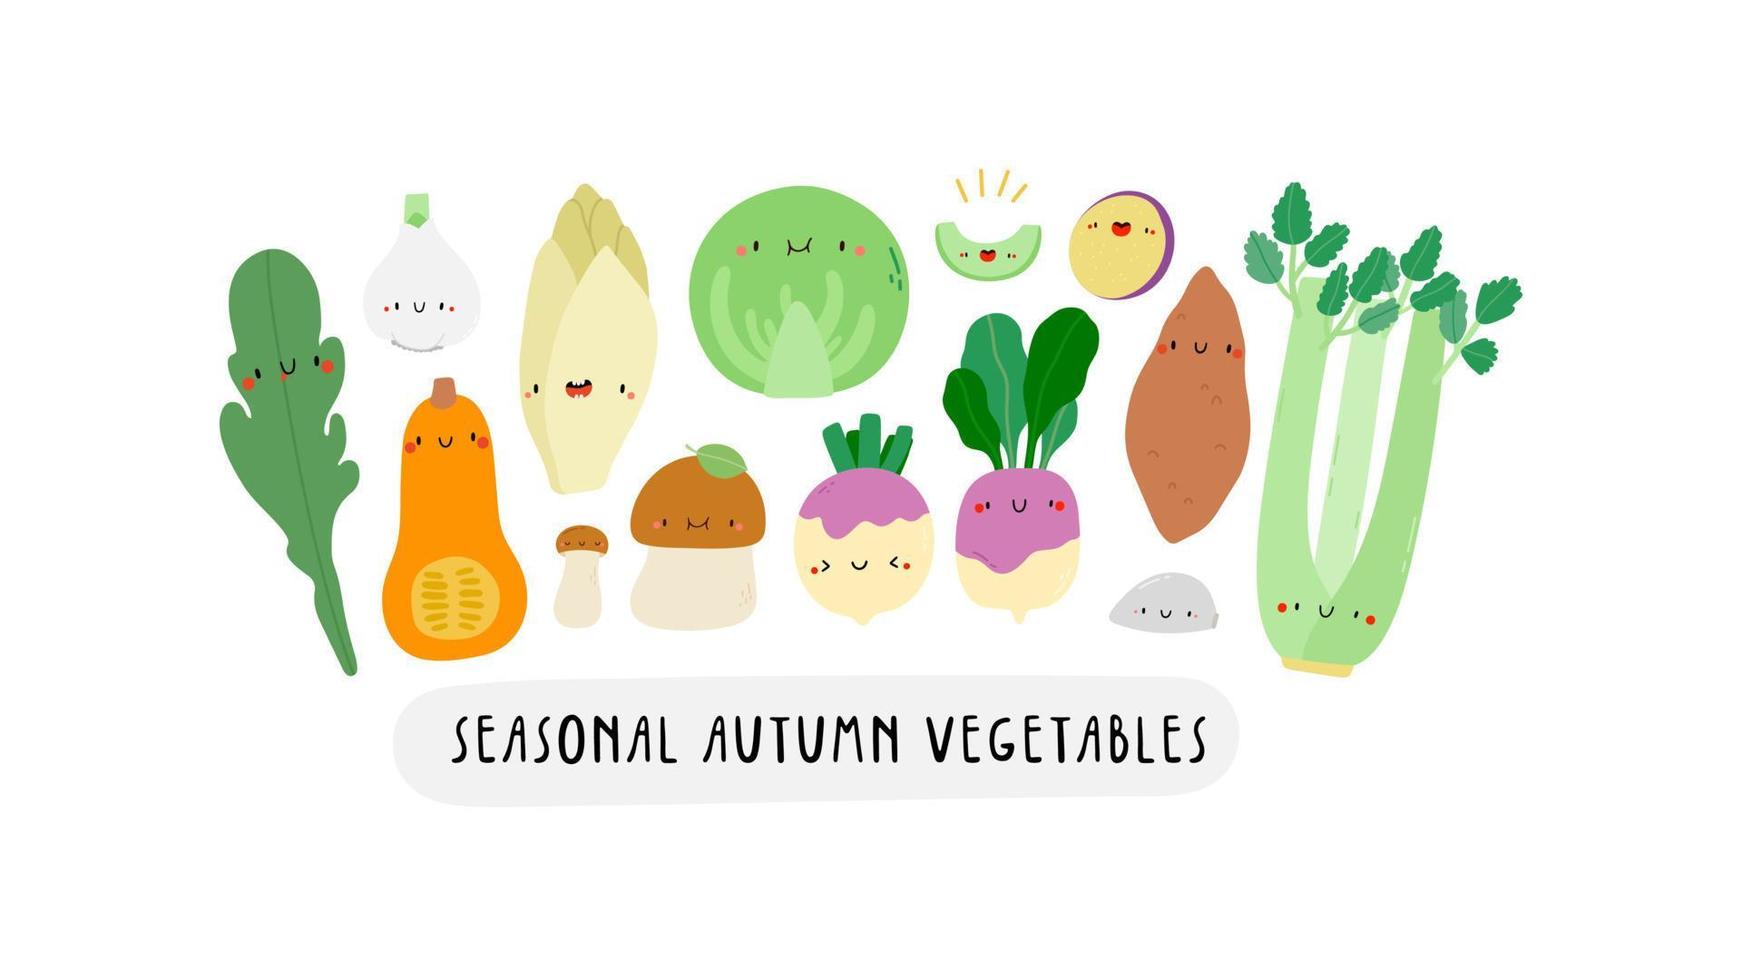 Linda ilustración con verduras de otoño de temporada sobre un fondo blanco. personajes de dibujos animados - apio, calabaza, nabo, escarola, repollo, batata, berenjena, ajo. pancarta de verduras saludables vector